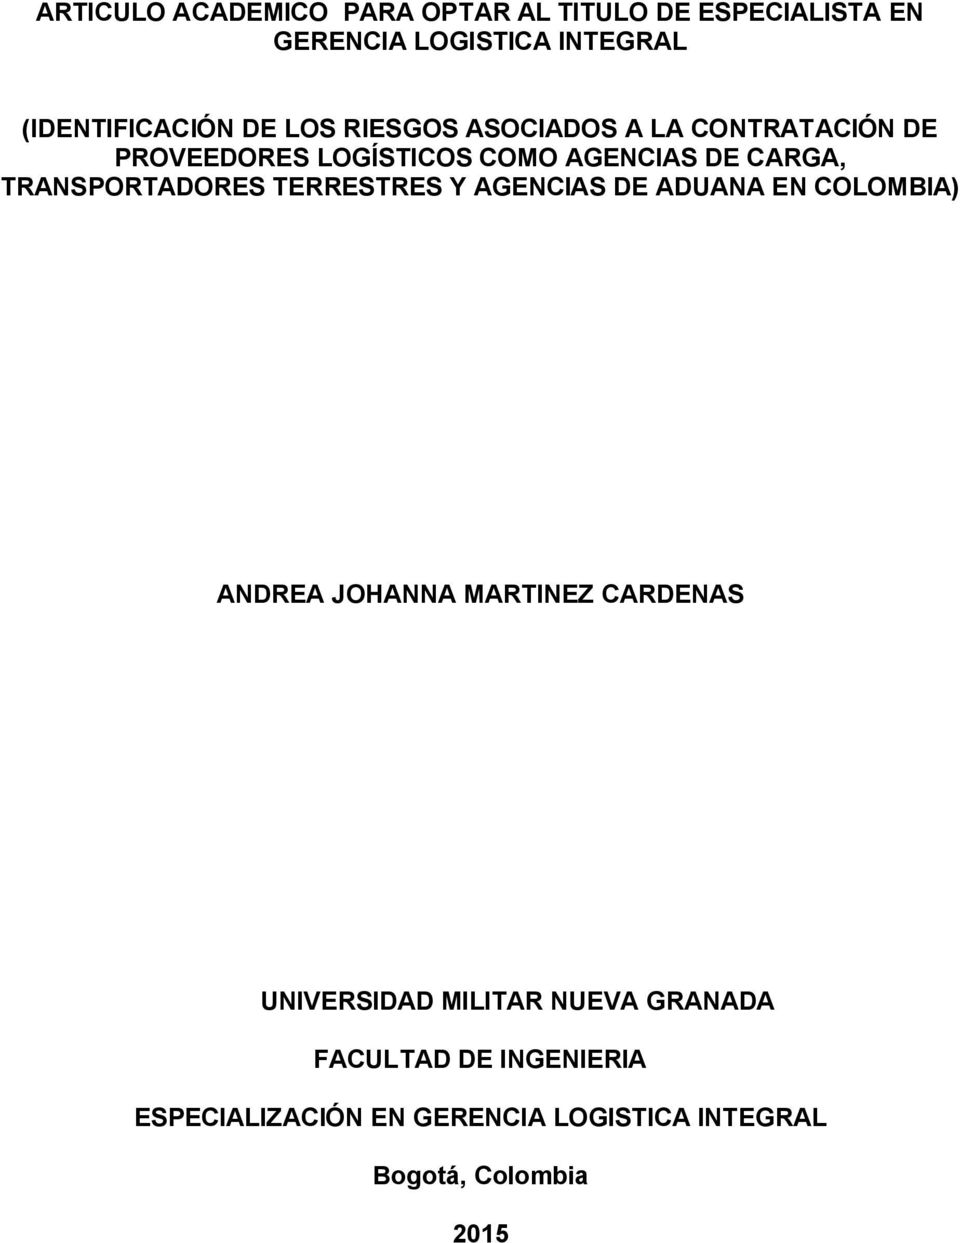 TRANSPORTADORES TERRESTRES Y AGENCIAS DE ADUANA EN COLOMBIA) ANDREA JOHANNA MARTINEZ CARDENAS